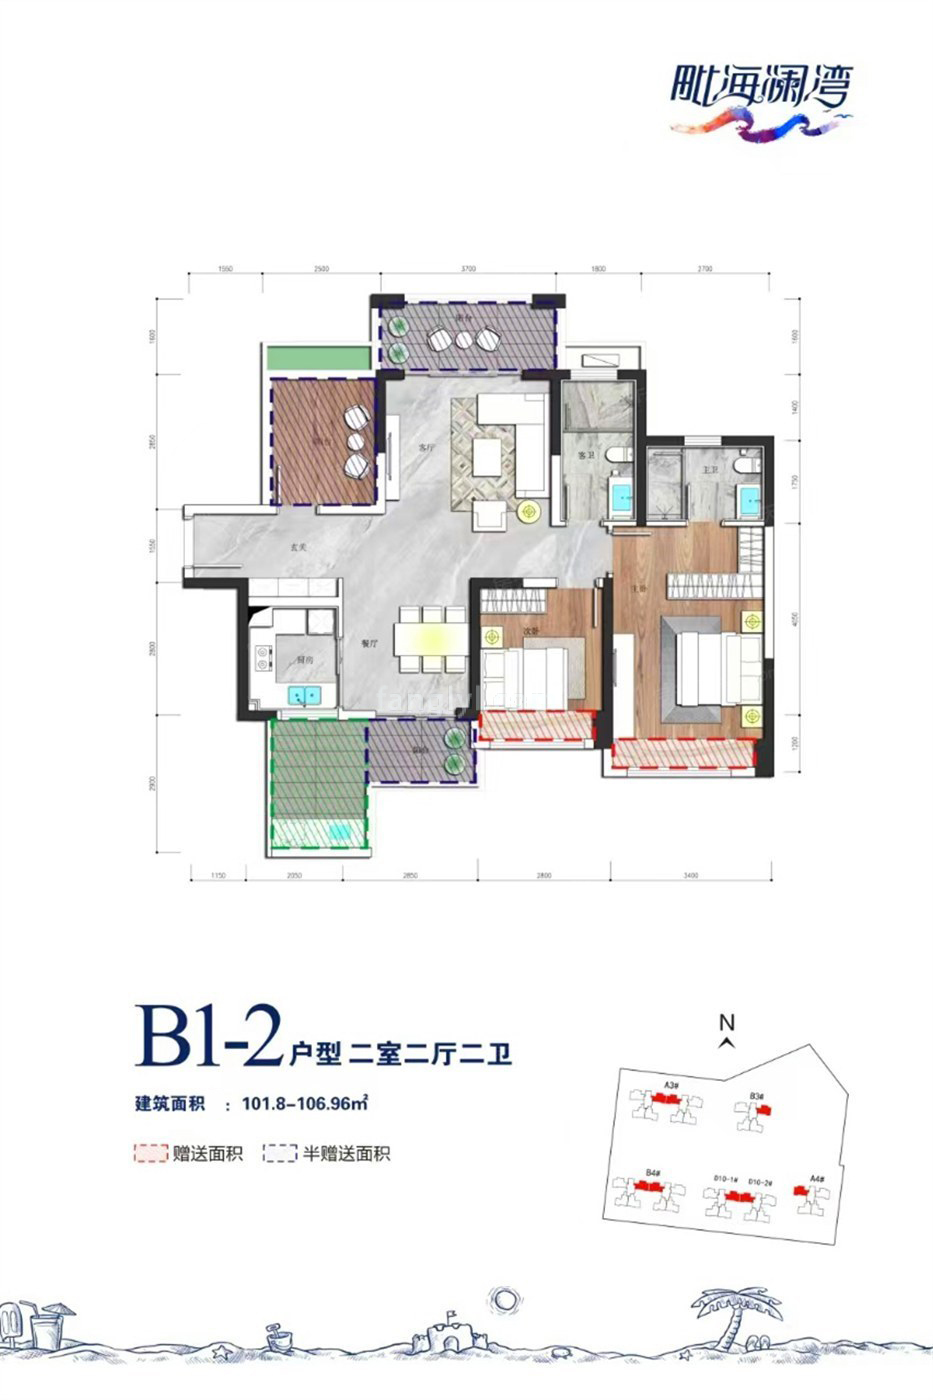 高层 B1-2户型 2室2厅2卫  建筑面积101.80-106.96㎡ 